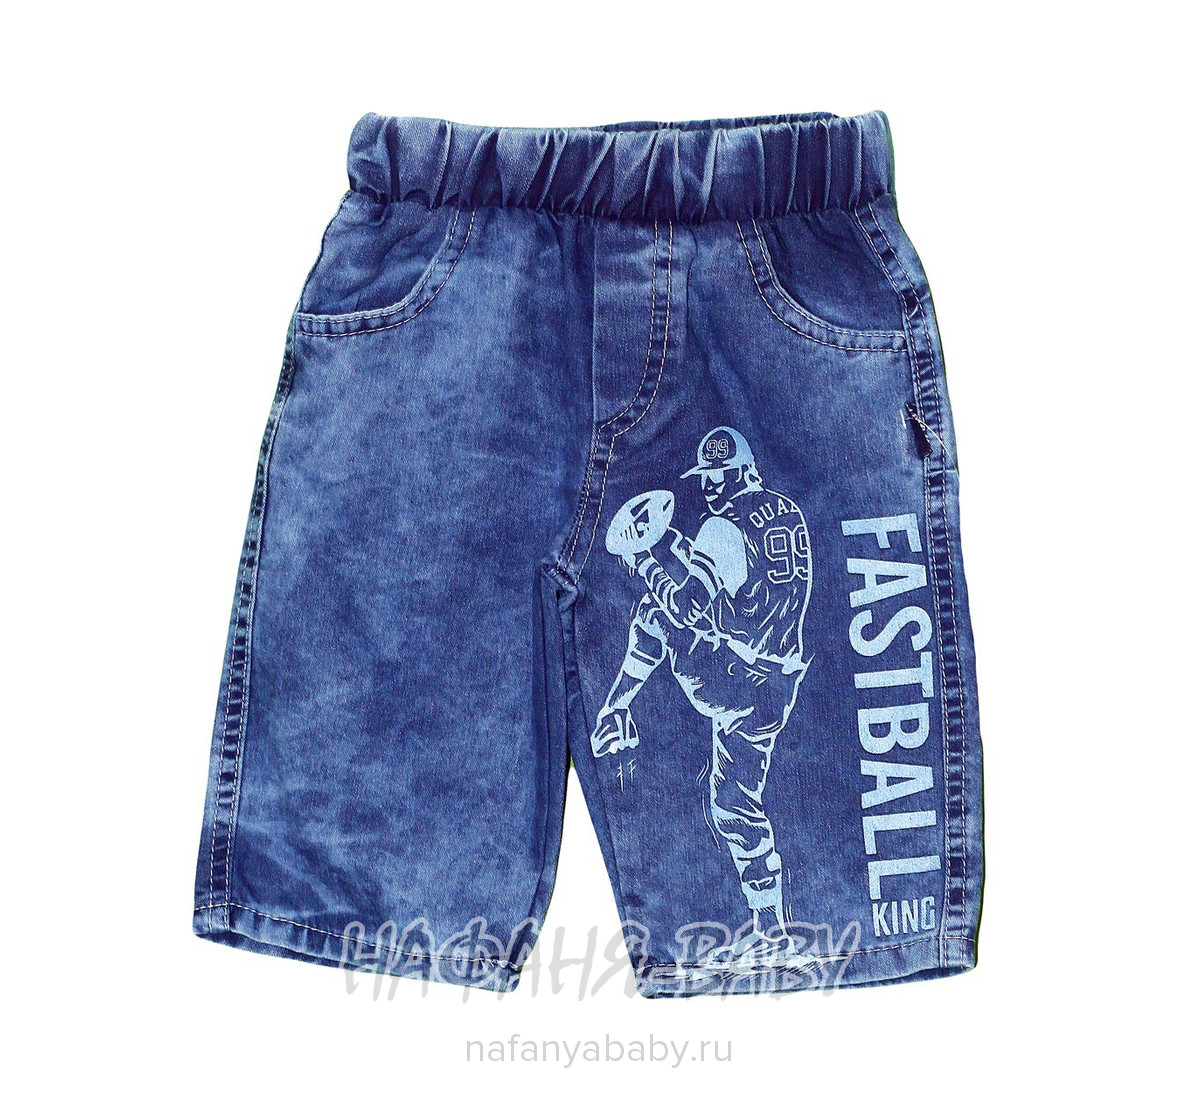 Детские джинсовые шорты AKIRA арт: 2695, 5-9 лет, 1-4 года, оптом Турция